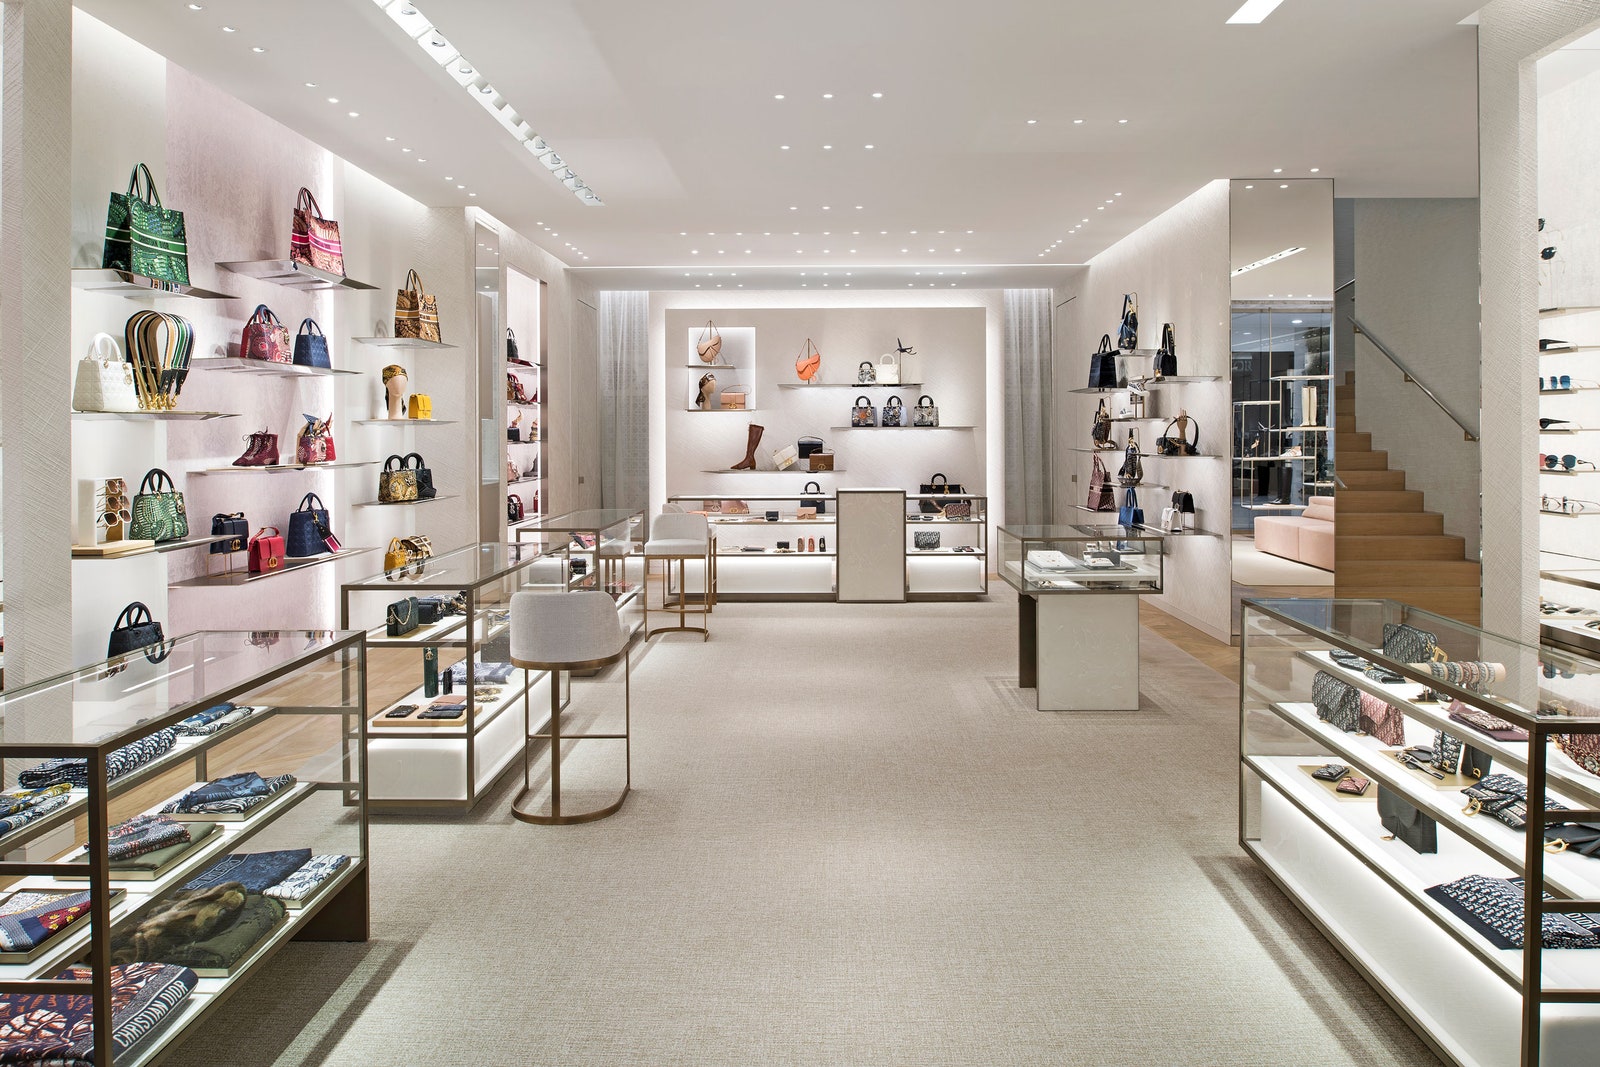 Новый бутик Dior во “Временах года”